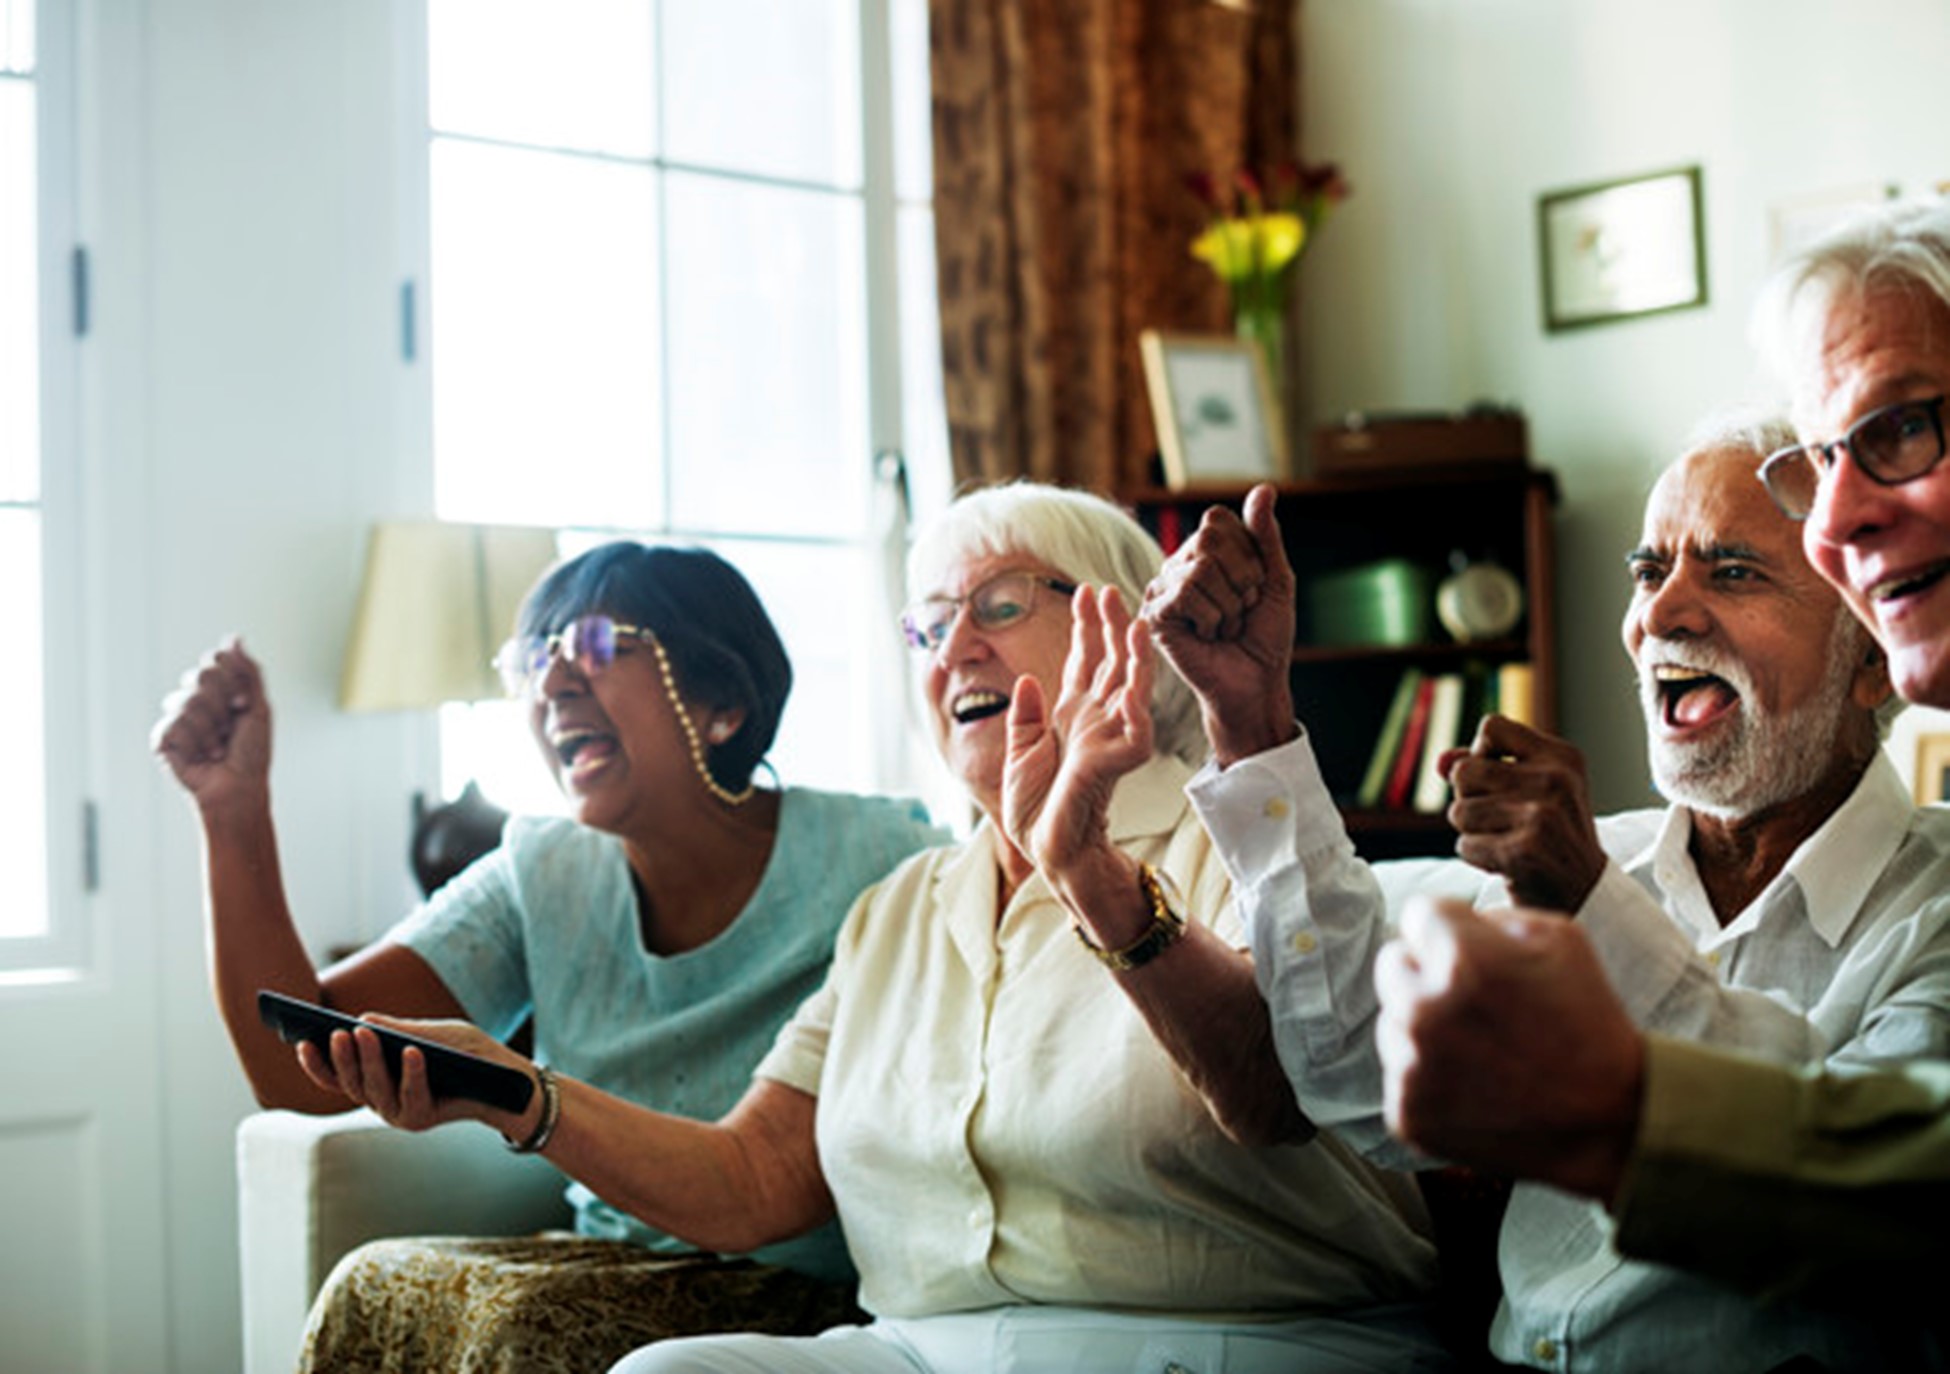 Group of elderly people watching TV